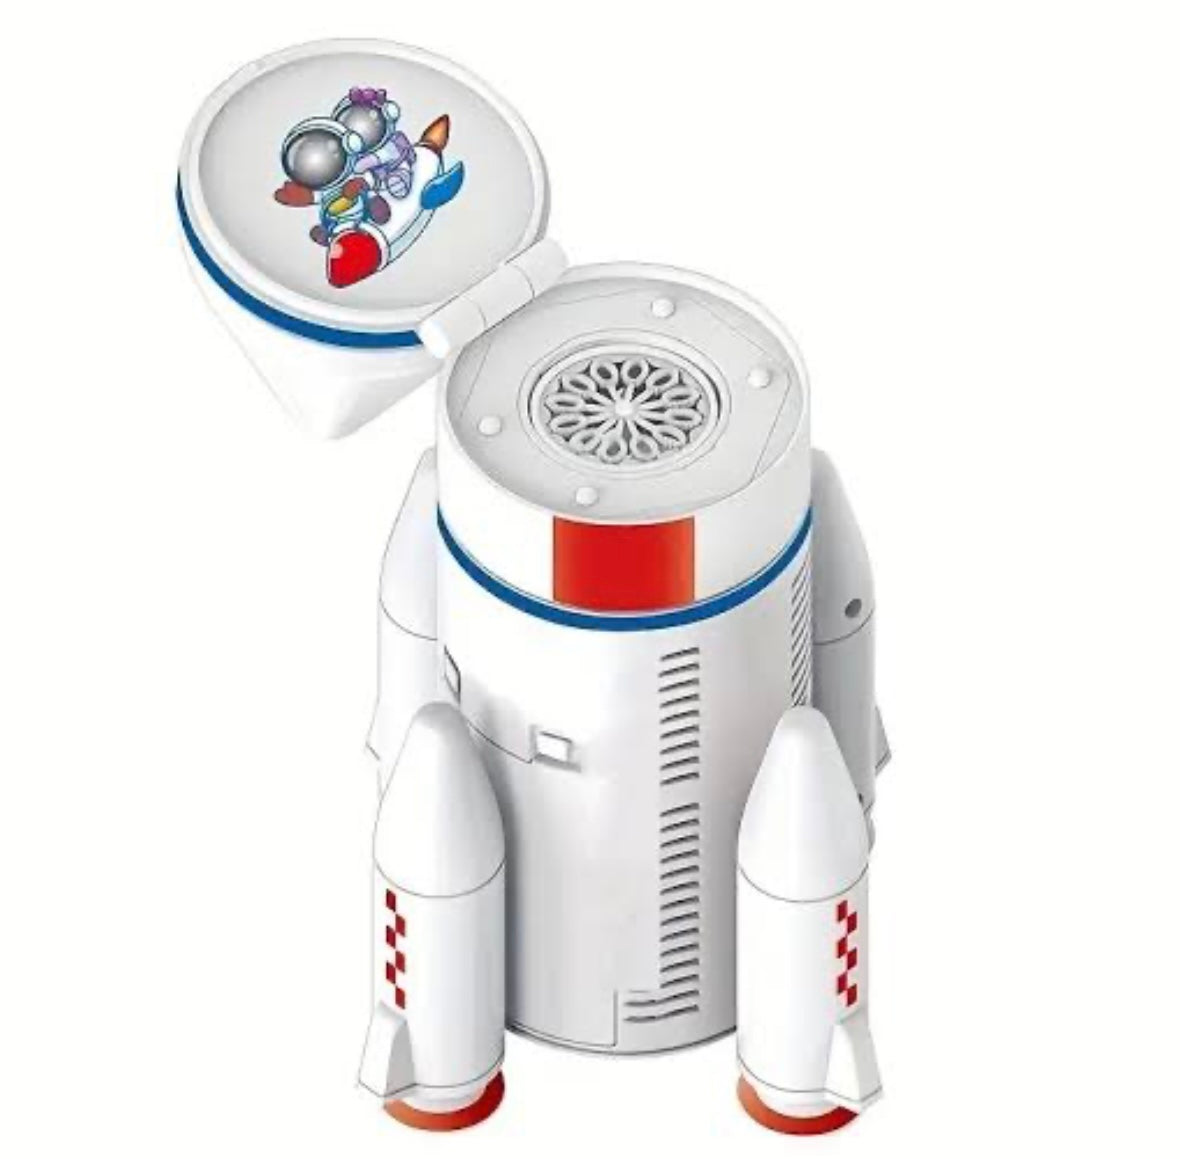 Rocket Astronaut Bubble Machine Toy